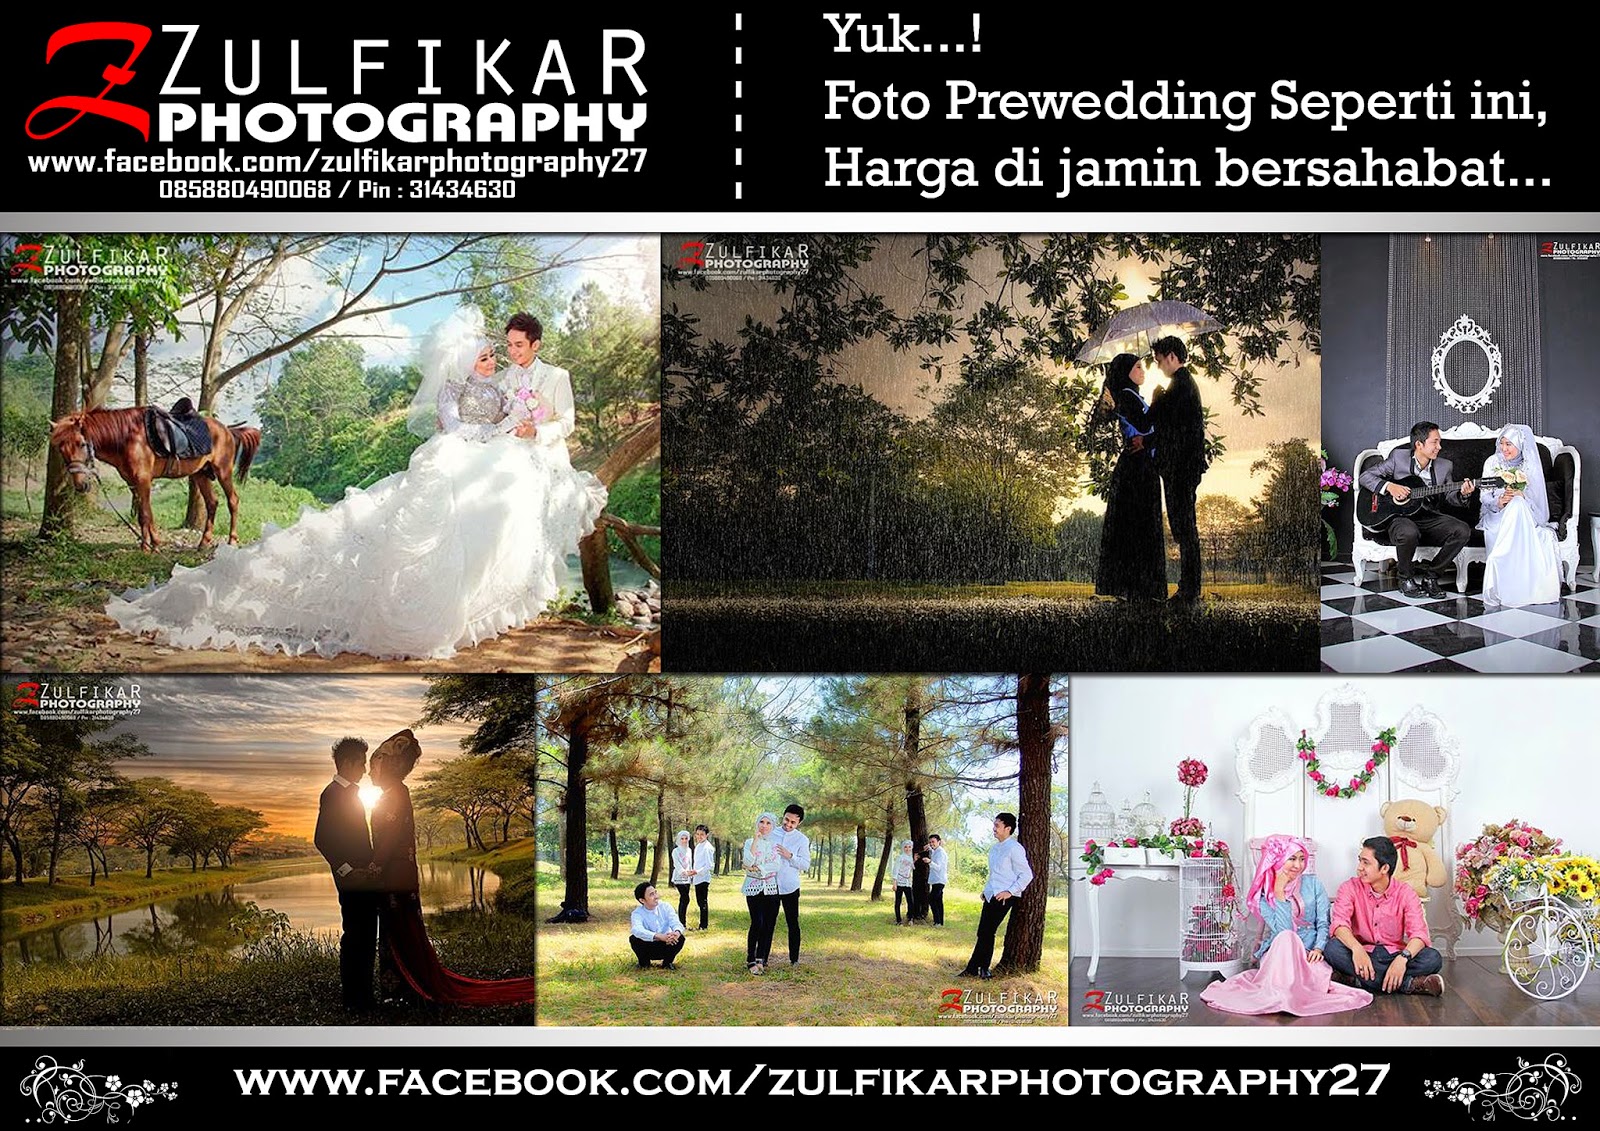 Foto Wedding Prewedding Video Shuuting Murah Paket Prewed Murah Di